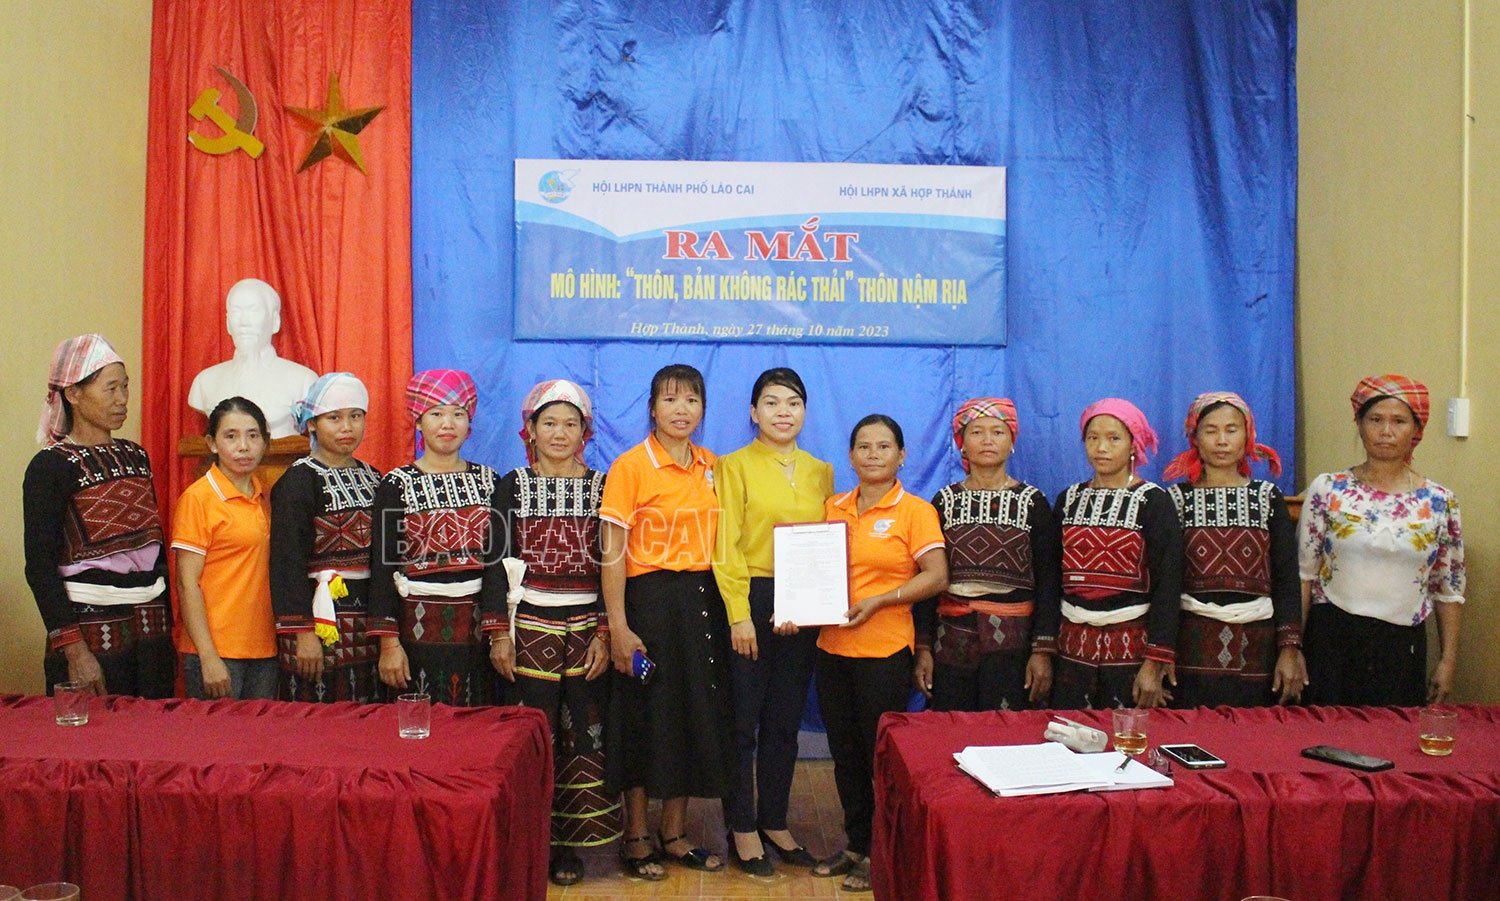 Hội Liên hiệp Phụ nữ thành phố Lào Cai ra mắt mô hình "Thôn, bản không có rác thải" tại xã Hợp Thành